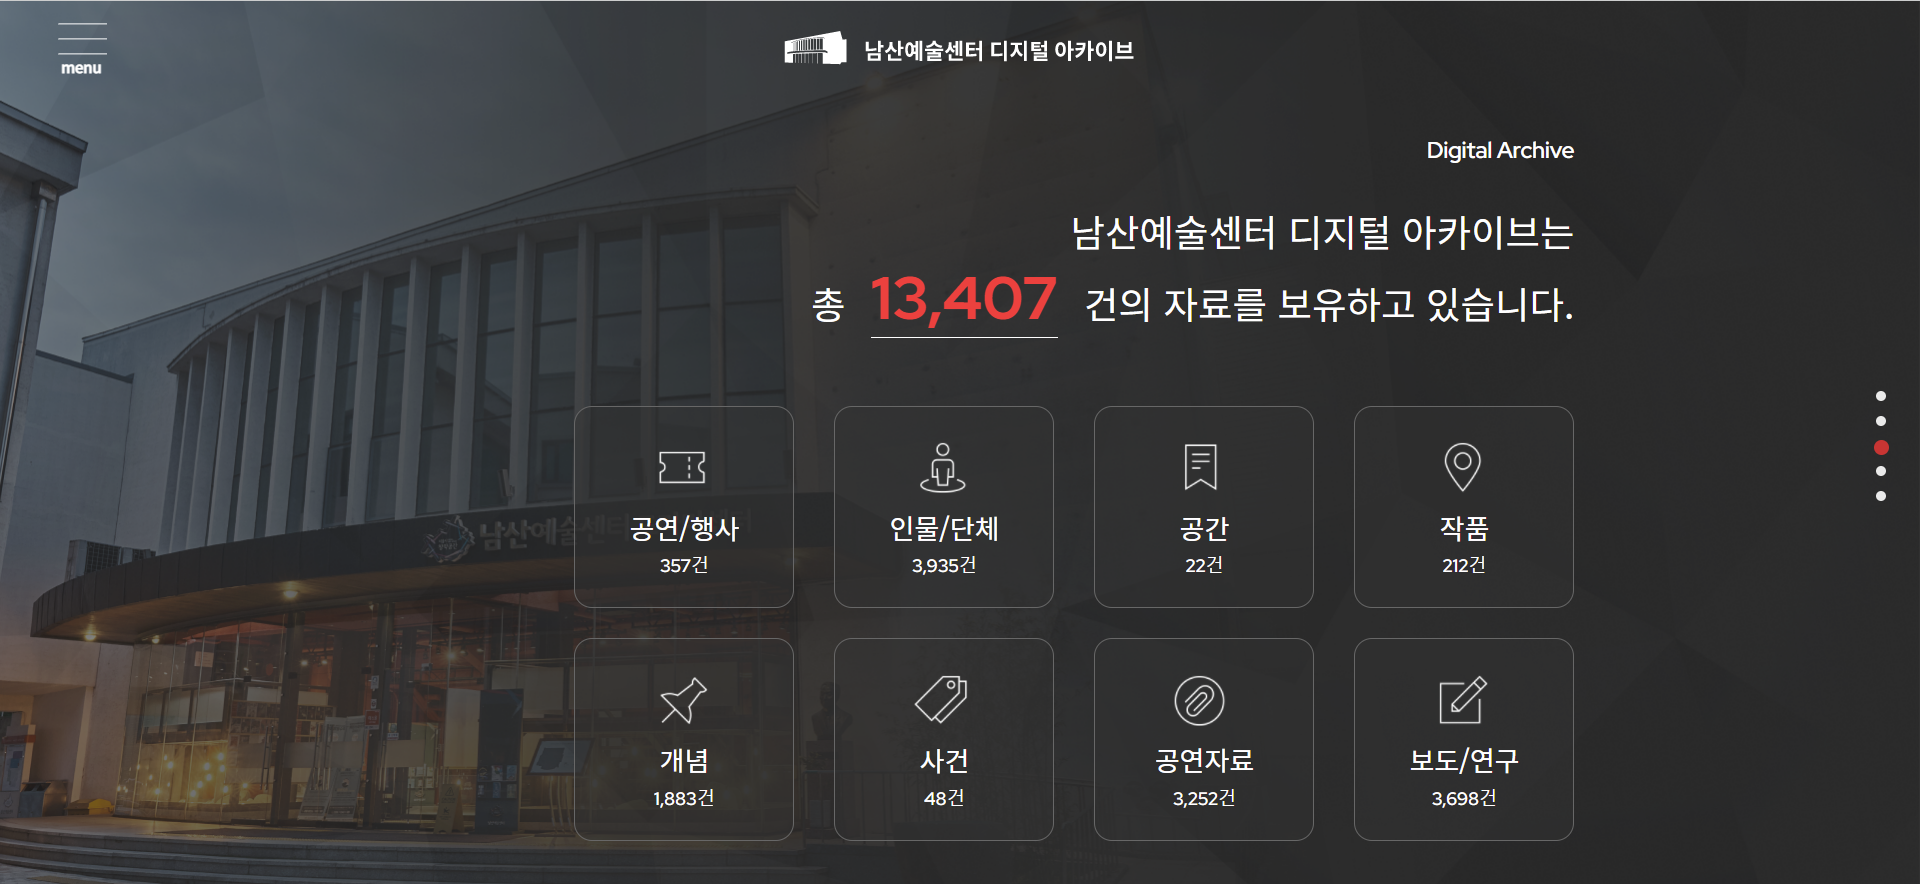 남산예술센터 디지털 아카이브 3.png